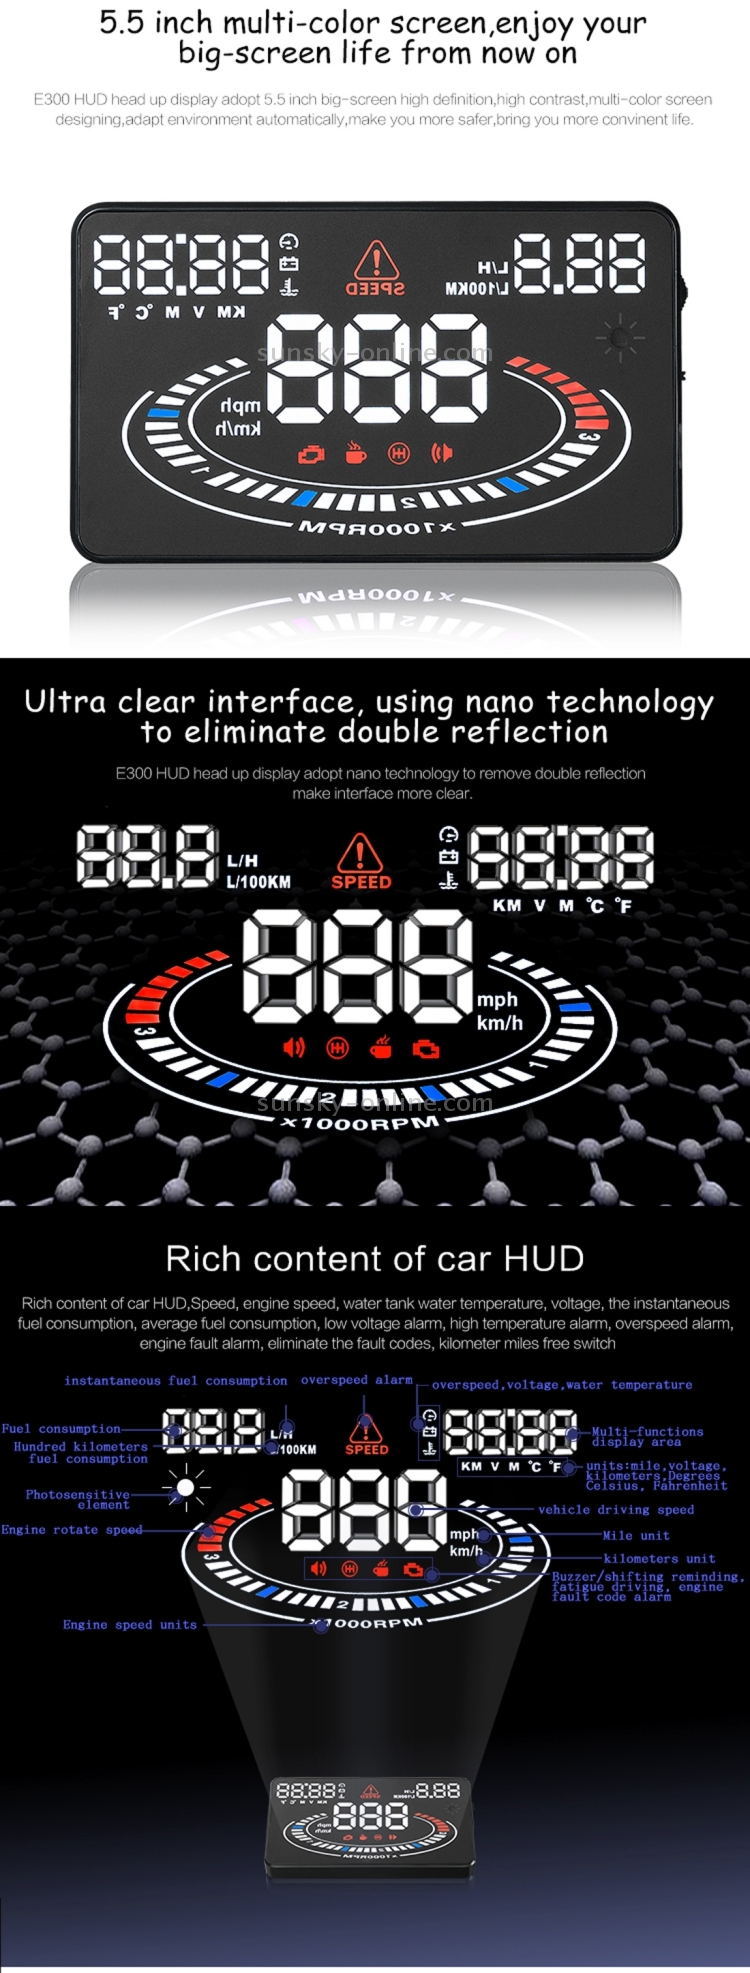 E300 5.5 pulgadas de coches OBDII / EUOBD HUD Head Up Display Sistema de seguridad, Soporte velocidad y consumo de combustible, alarma de exceso de velocidad, consumo de combustible, temperatura del agua, etc (Negro) montados en vehículos - 9